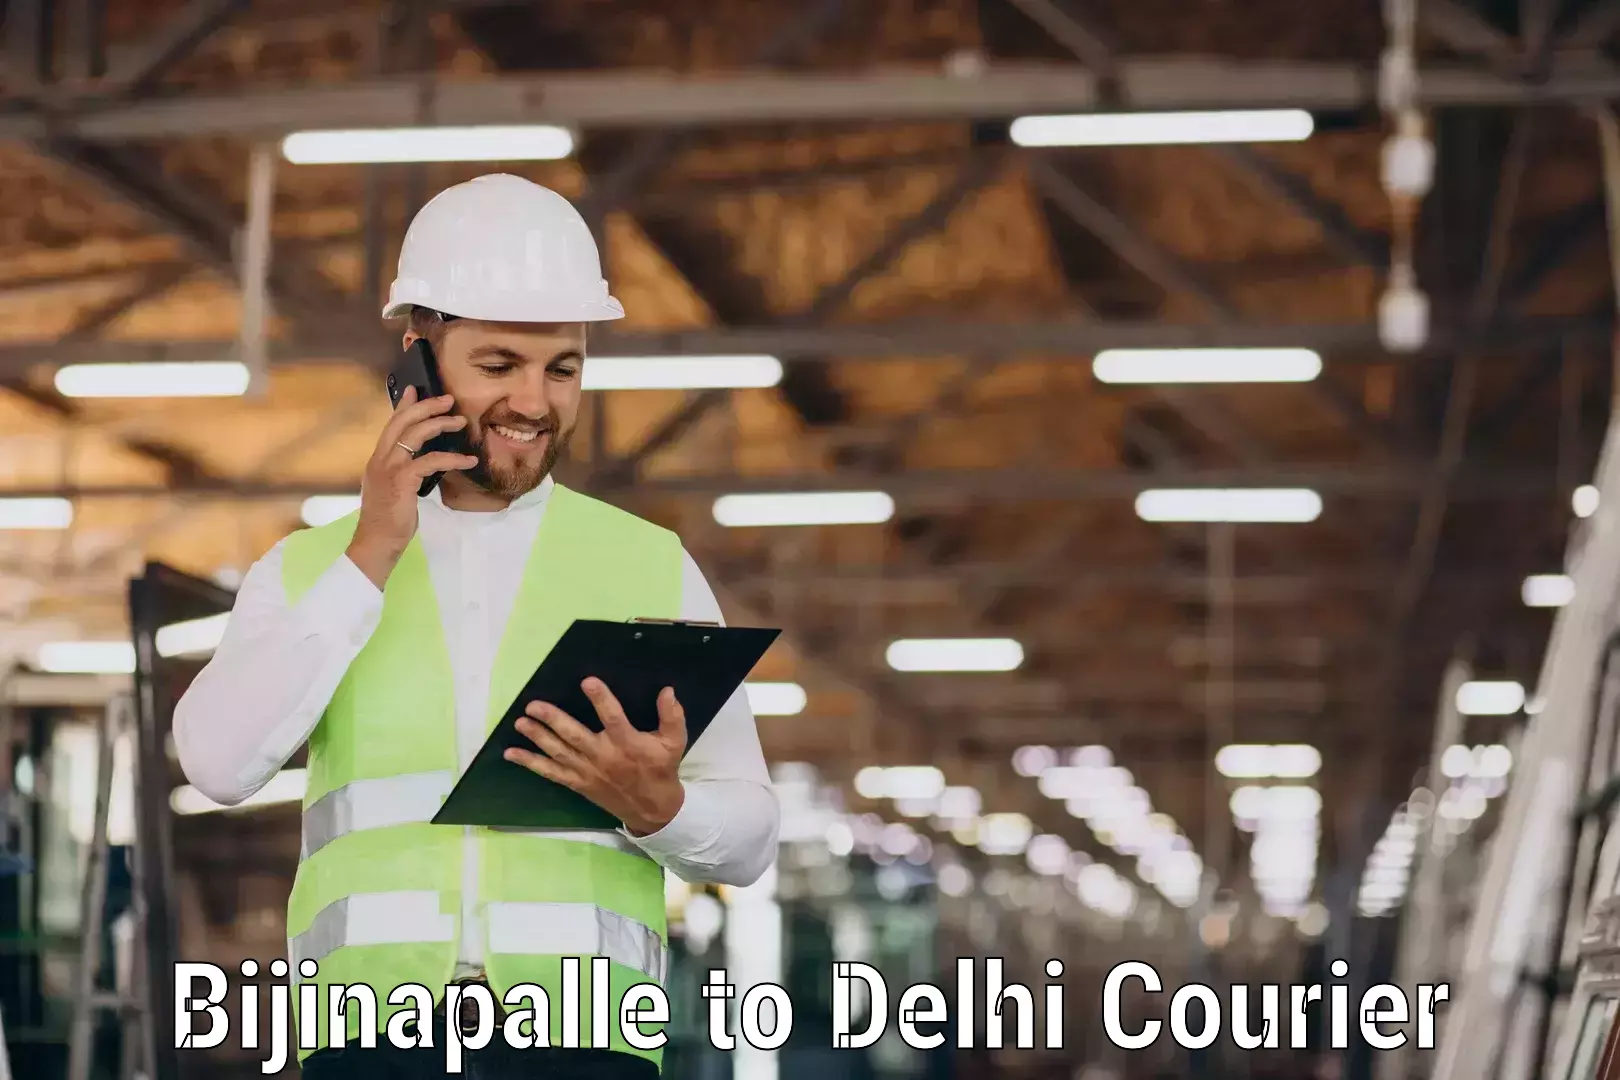 Efficient freight service Bijinapalle to IIT Delhi